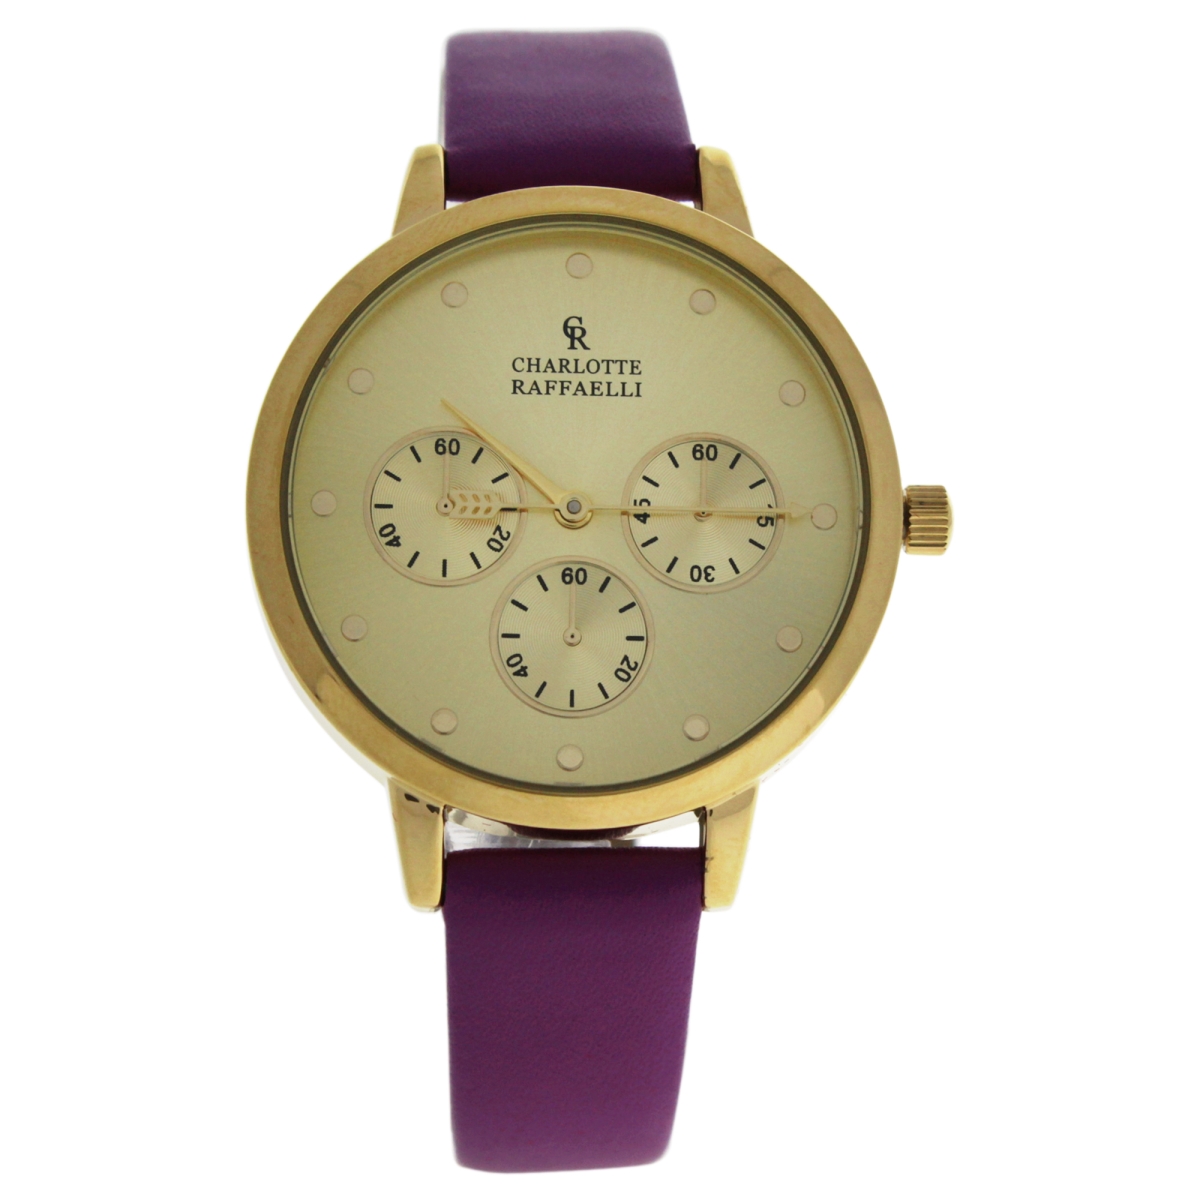 W-wat-1514 Leather Strap Watch For Women Watch, Gold & Purple